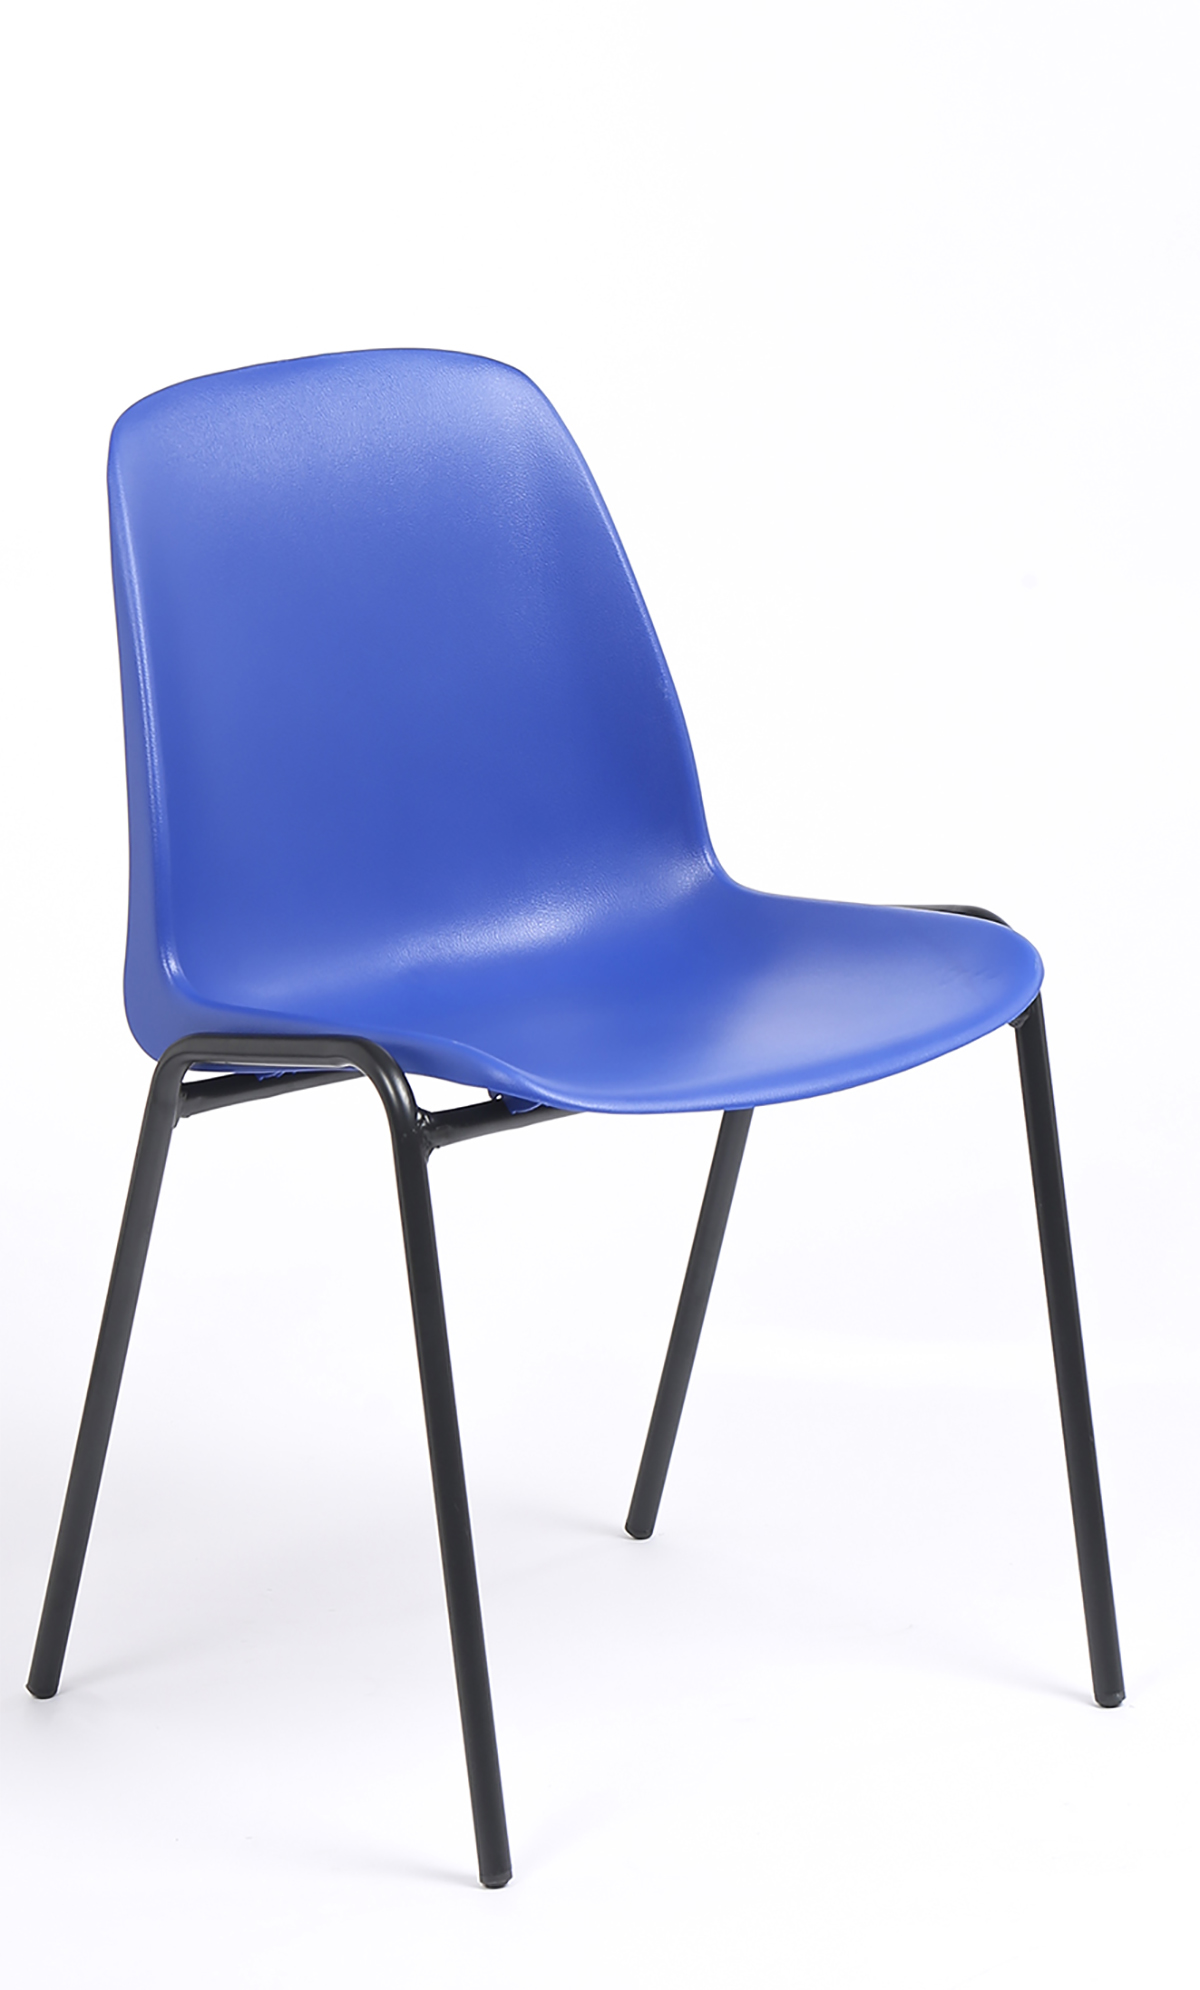 Chaise CHARLOTTE - pieds noirs sans accroche - coque M1 (non feu) - bleu